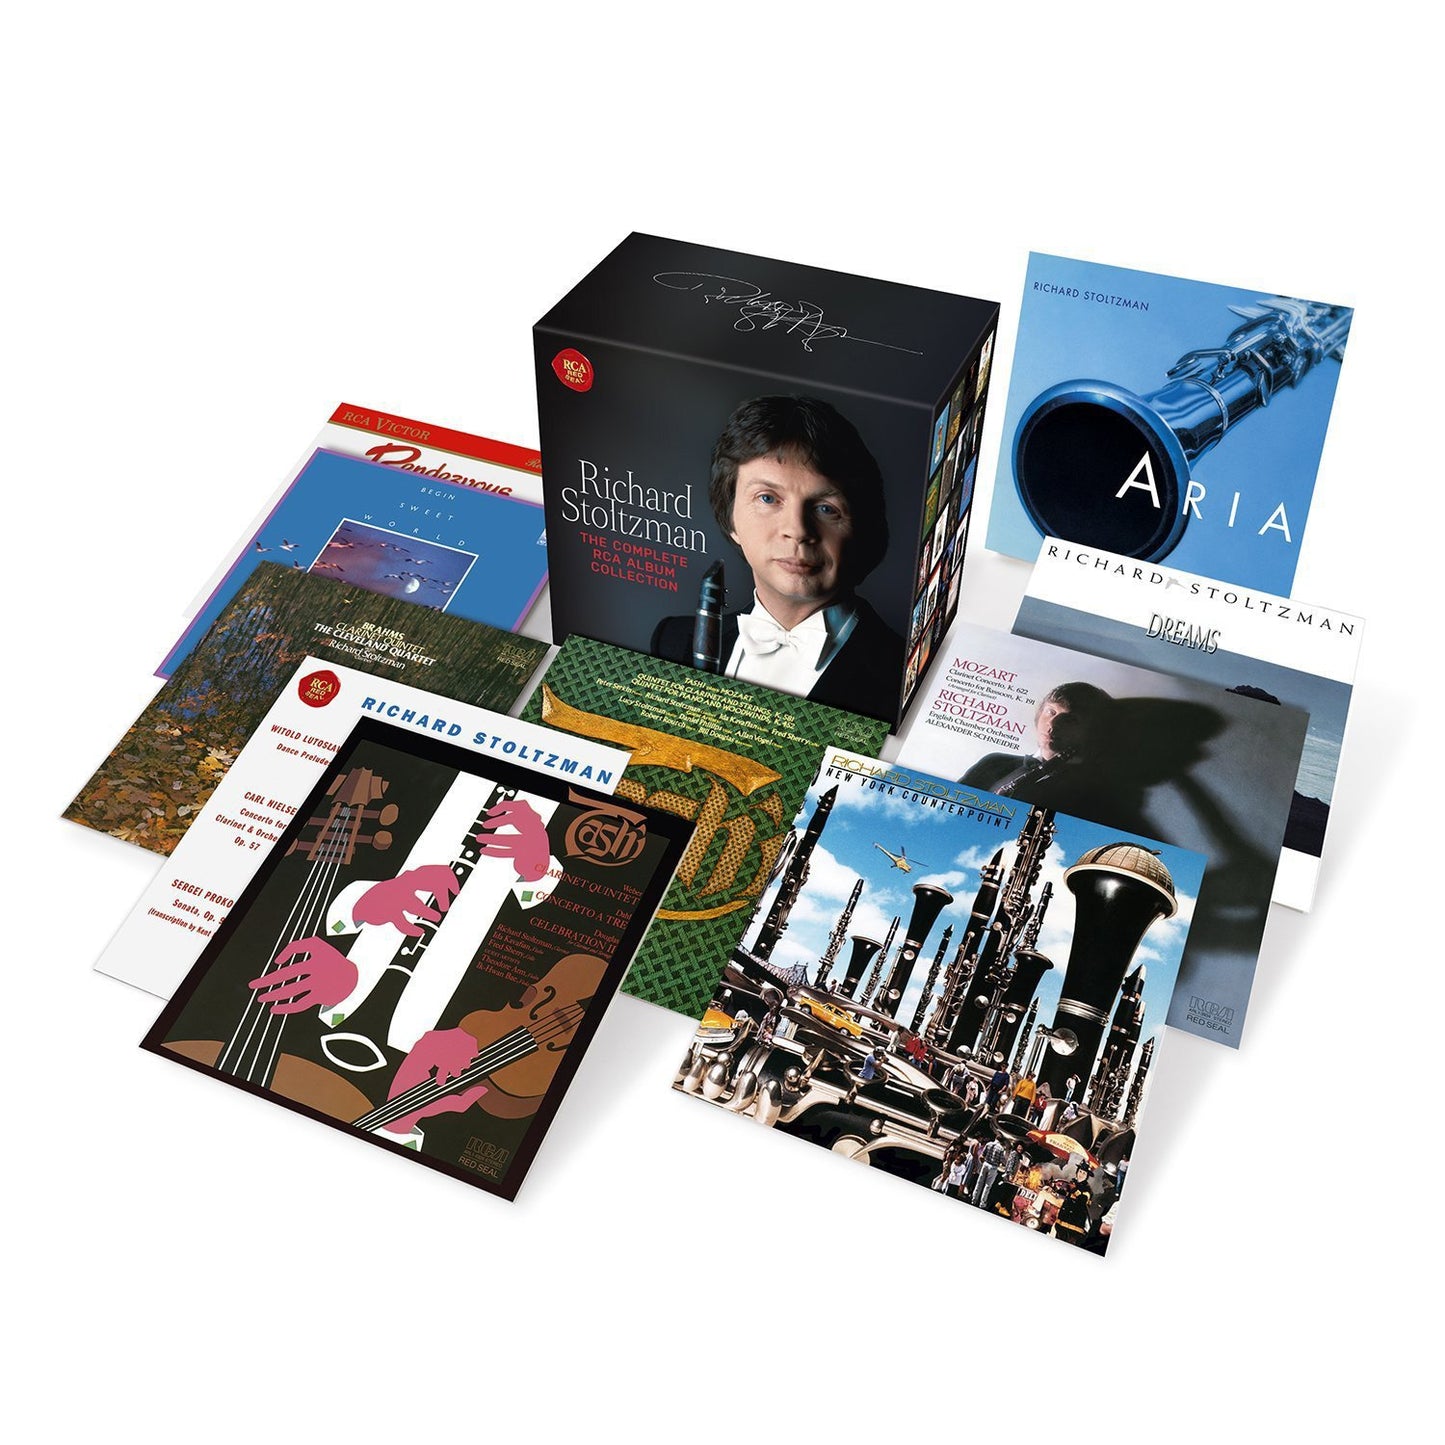 RICHARD STOLTZMAN: THE COMPLETE ALBUM COLLECTION (40 CDS)